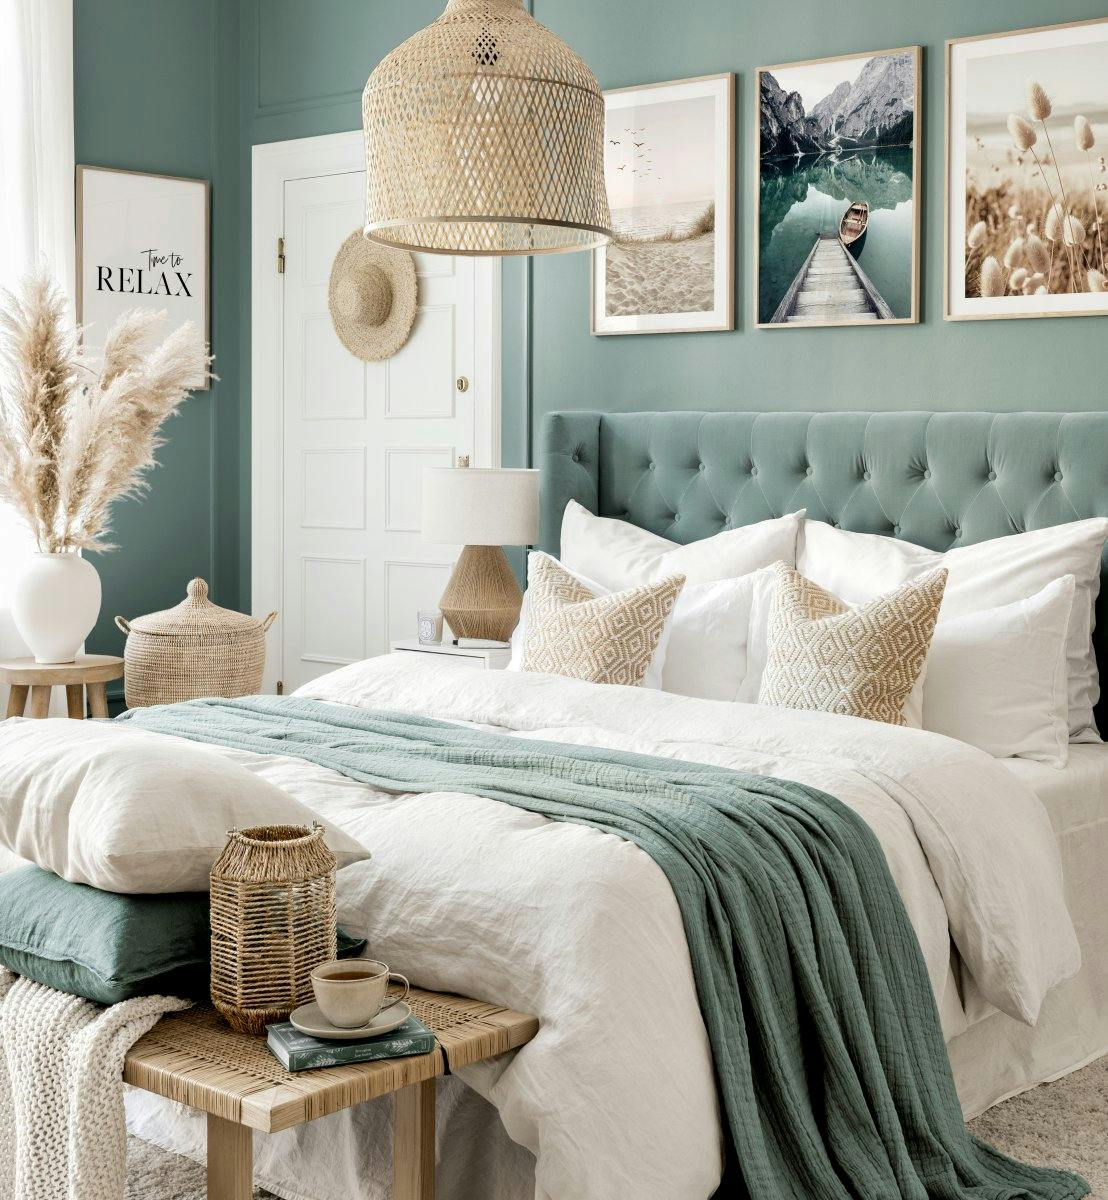 جدار غرفة النوم لصور الشاطئ الأزرق مع إطارات خشب البلوط